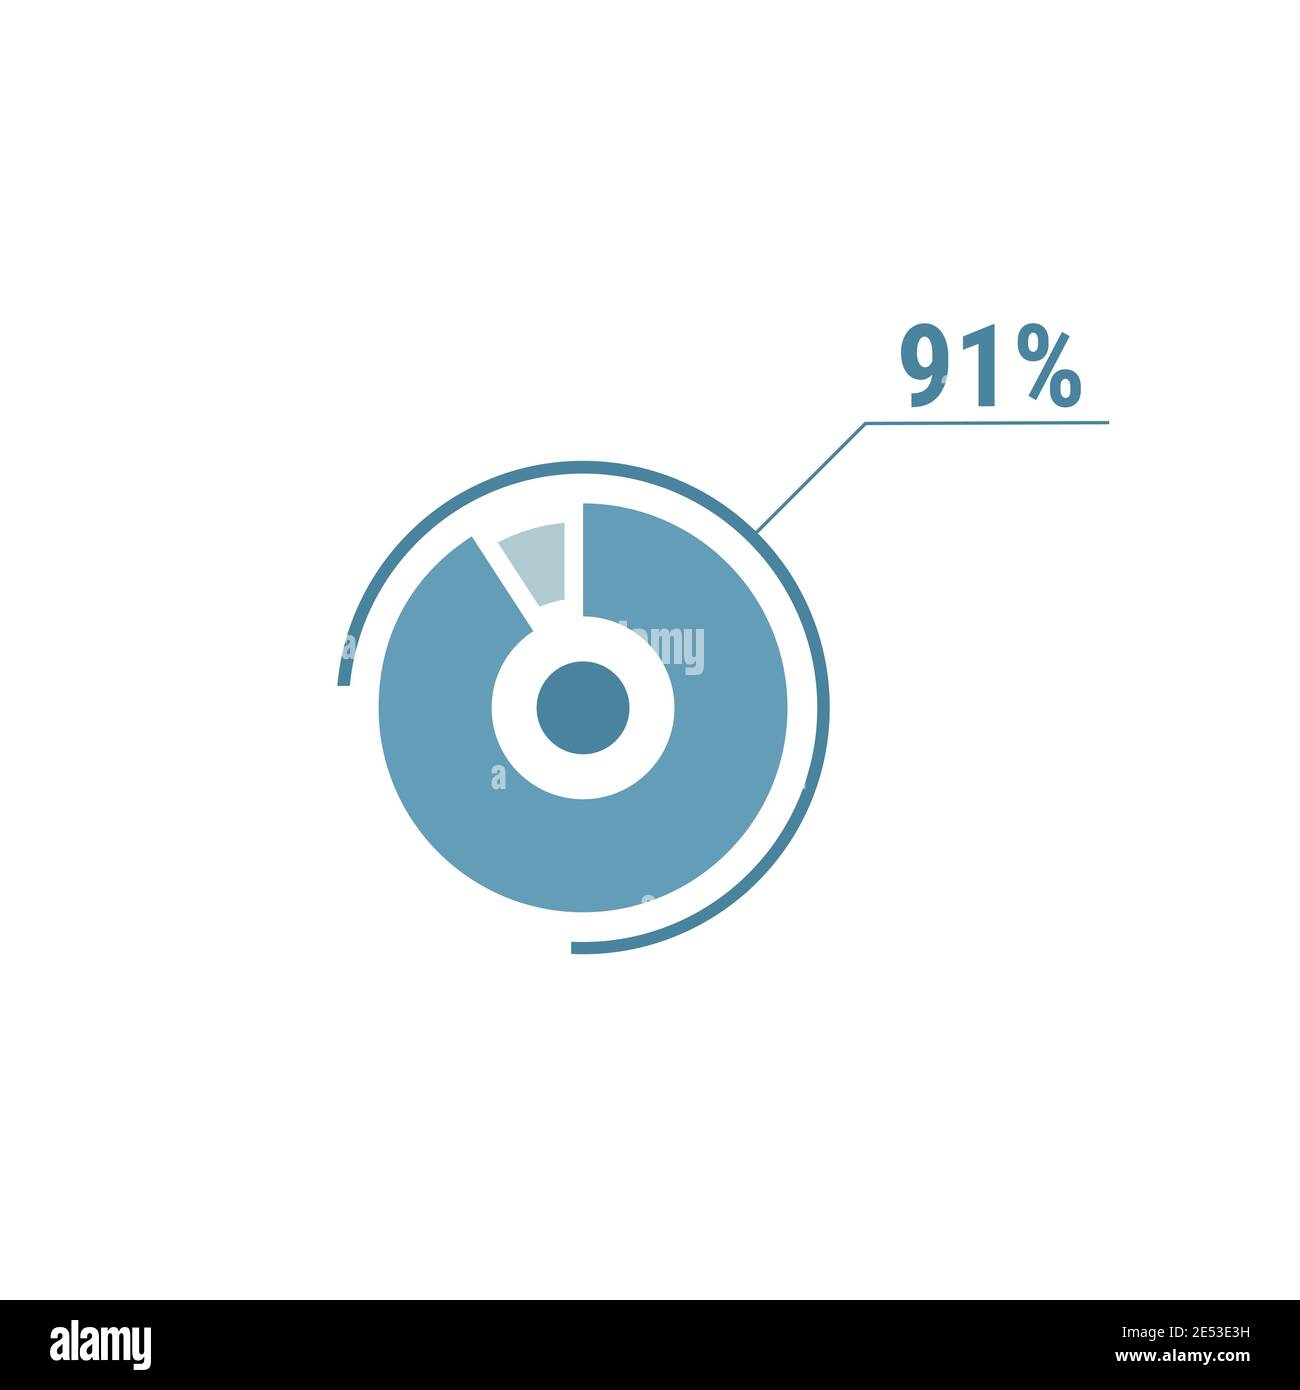 Ein-Prozent-Diagramm Torte, 91 Prozent Kreis Diagramm, Vektor-Design-Illustration, blau auf weißem Hintergrund. Stock Vektor